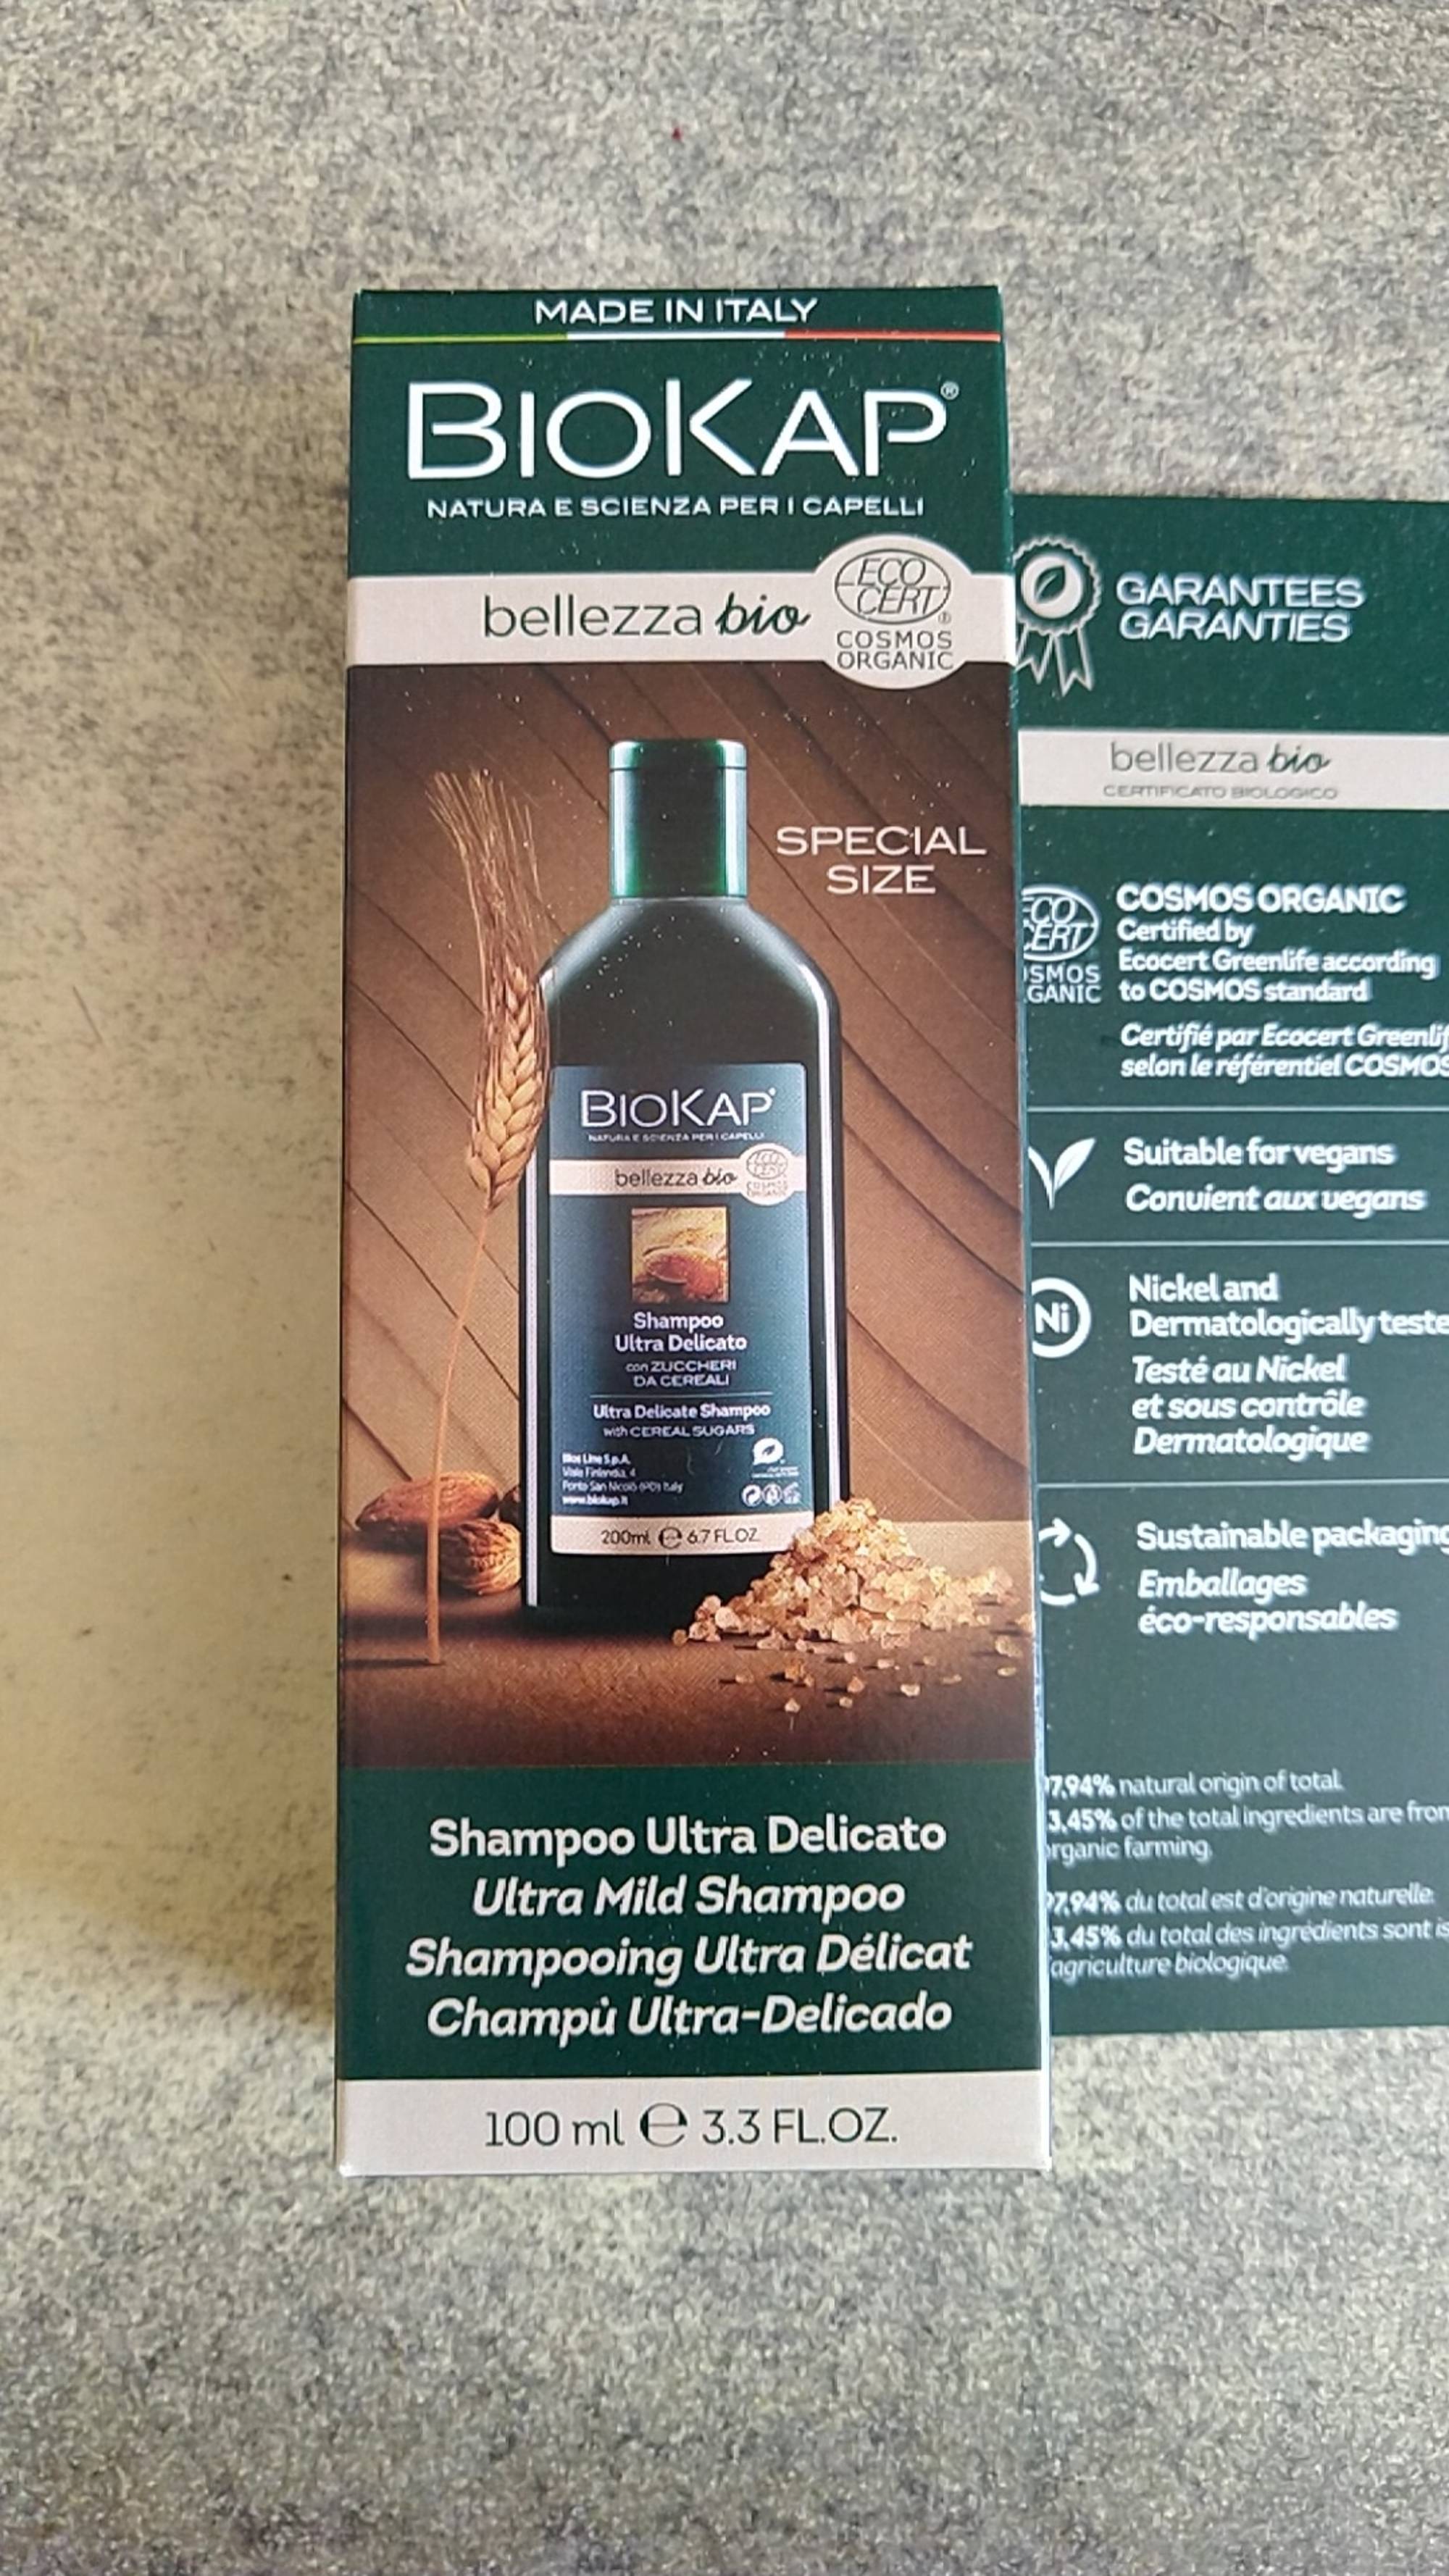 BIOKAP - Bellezza bio - Shampoo ultra delicato